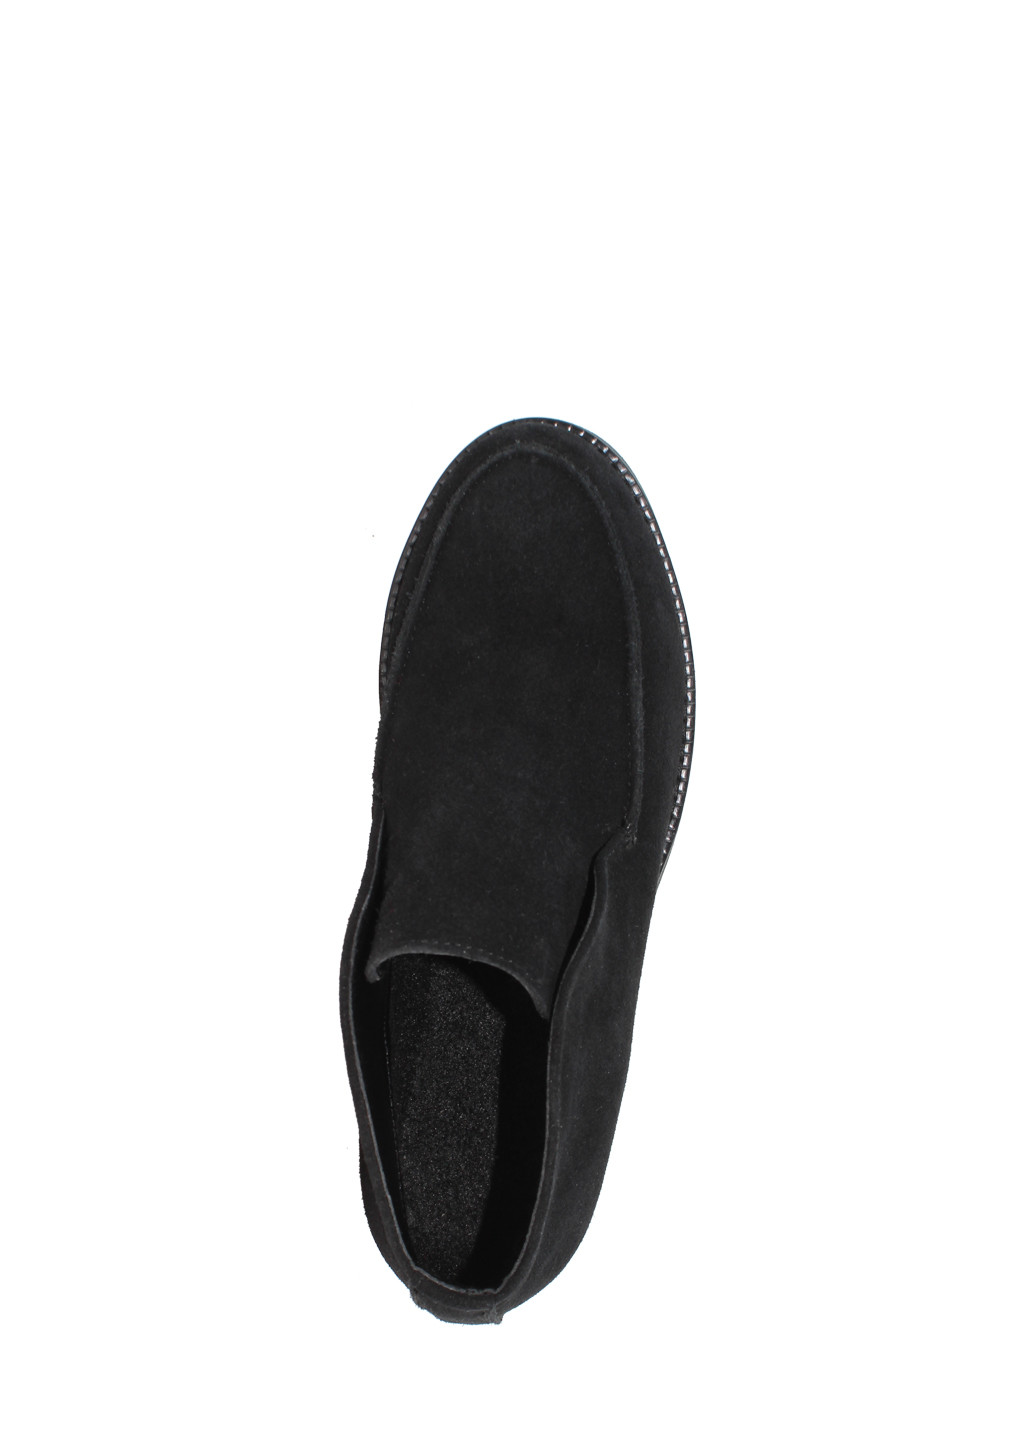 Осенние ботинки dr715-11 черный Dalis из натуральной замши